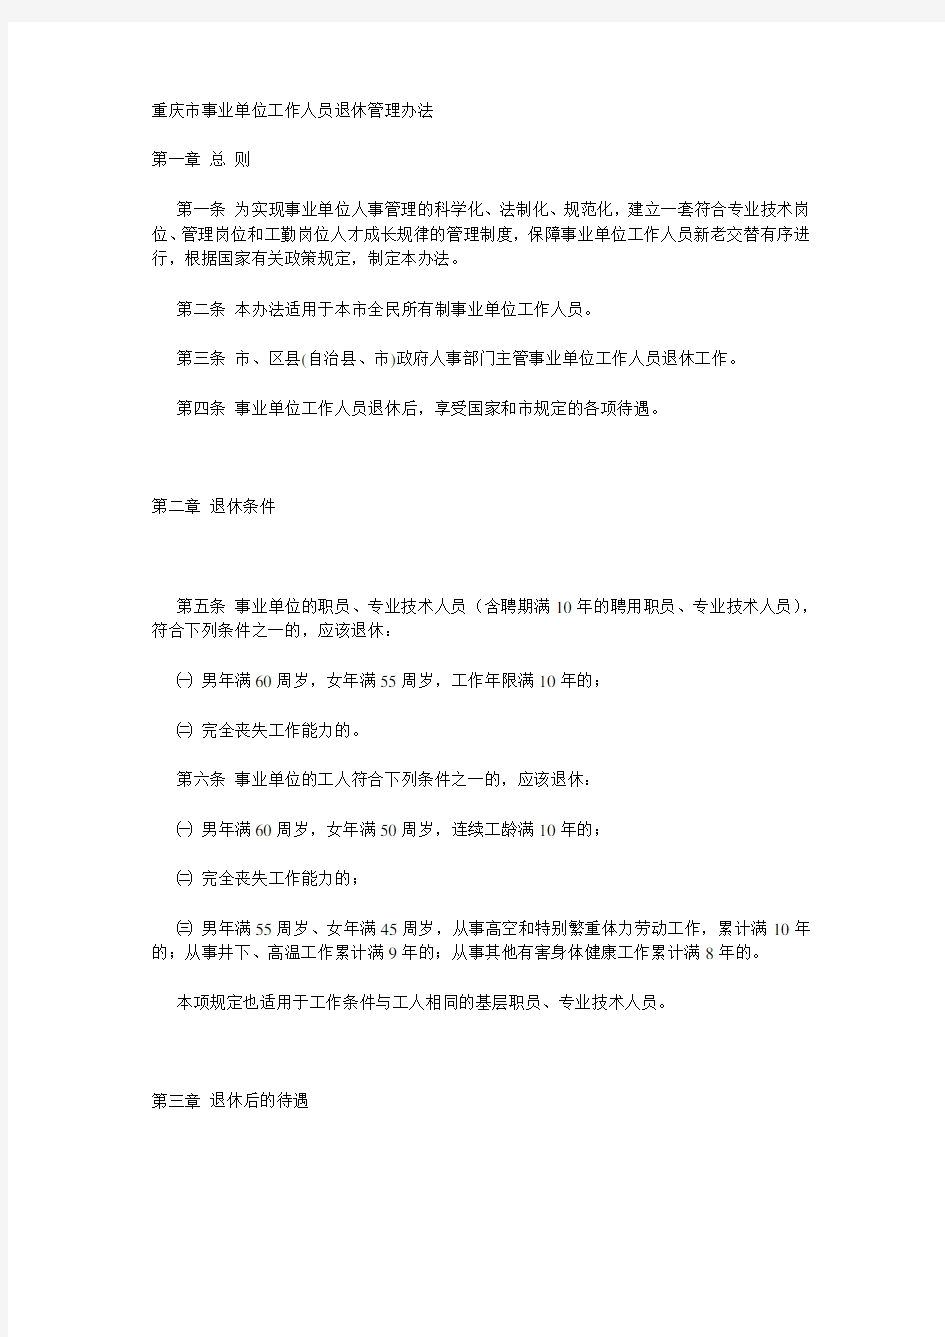 重庆市事业单位工作人员退休管理办法